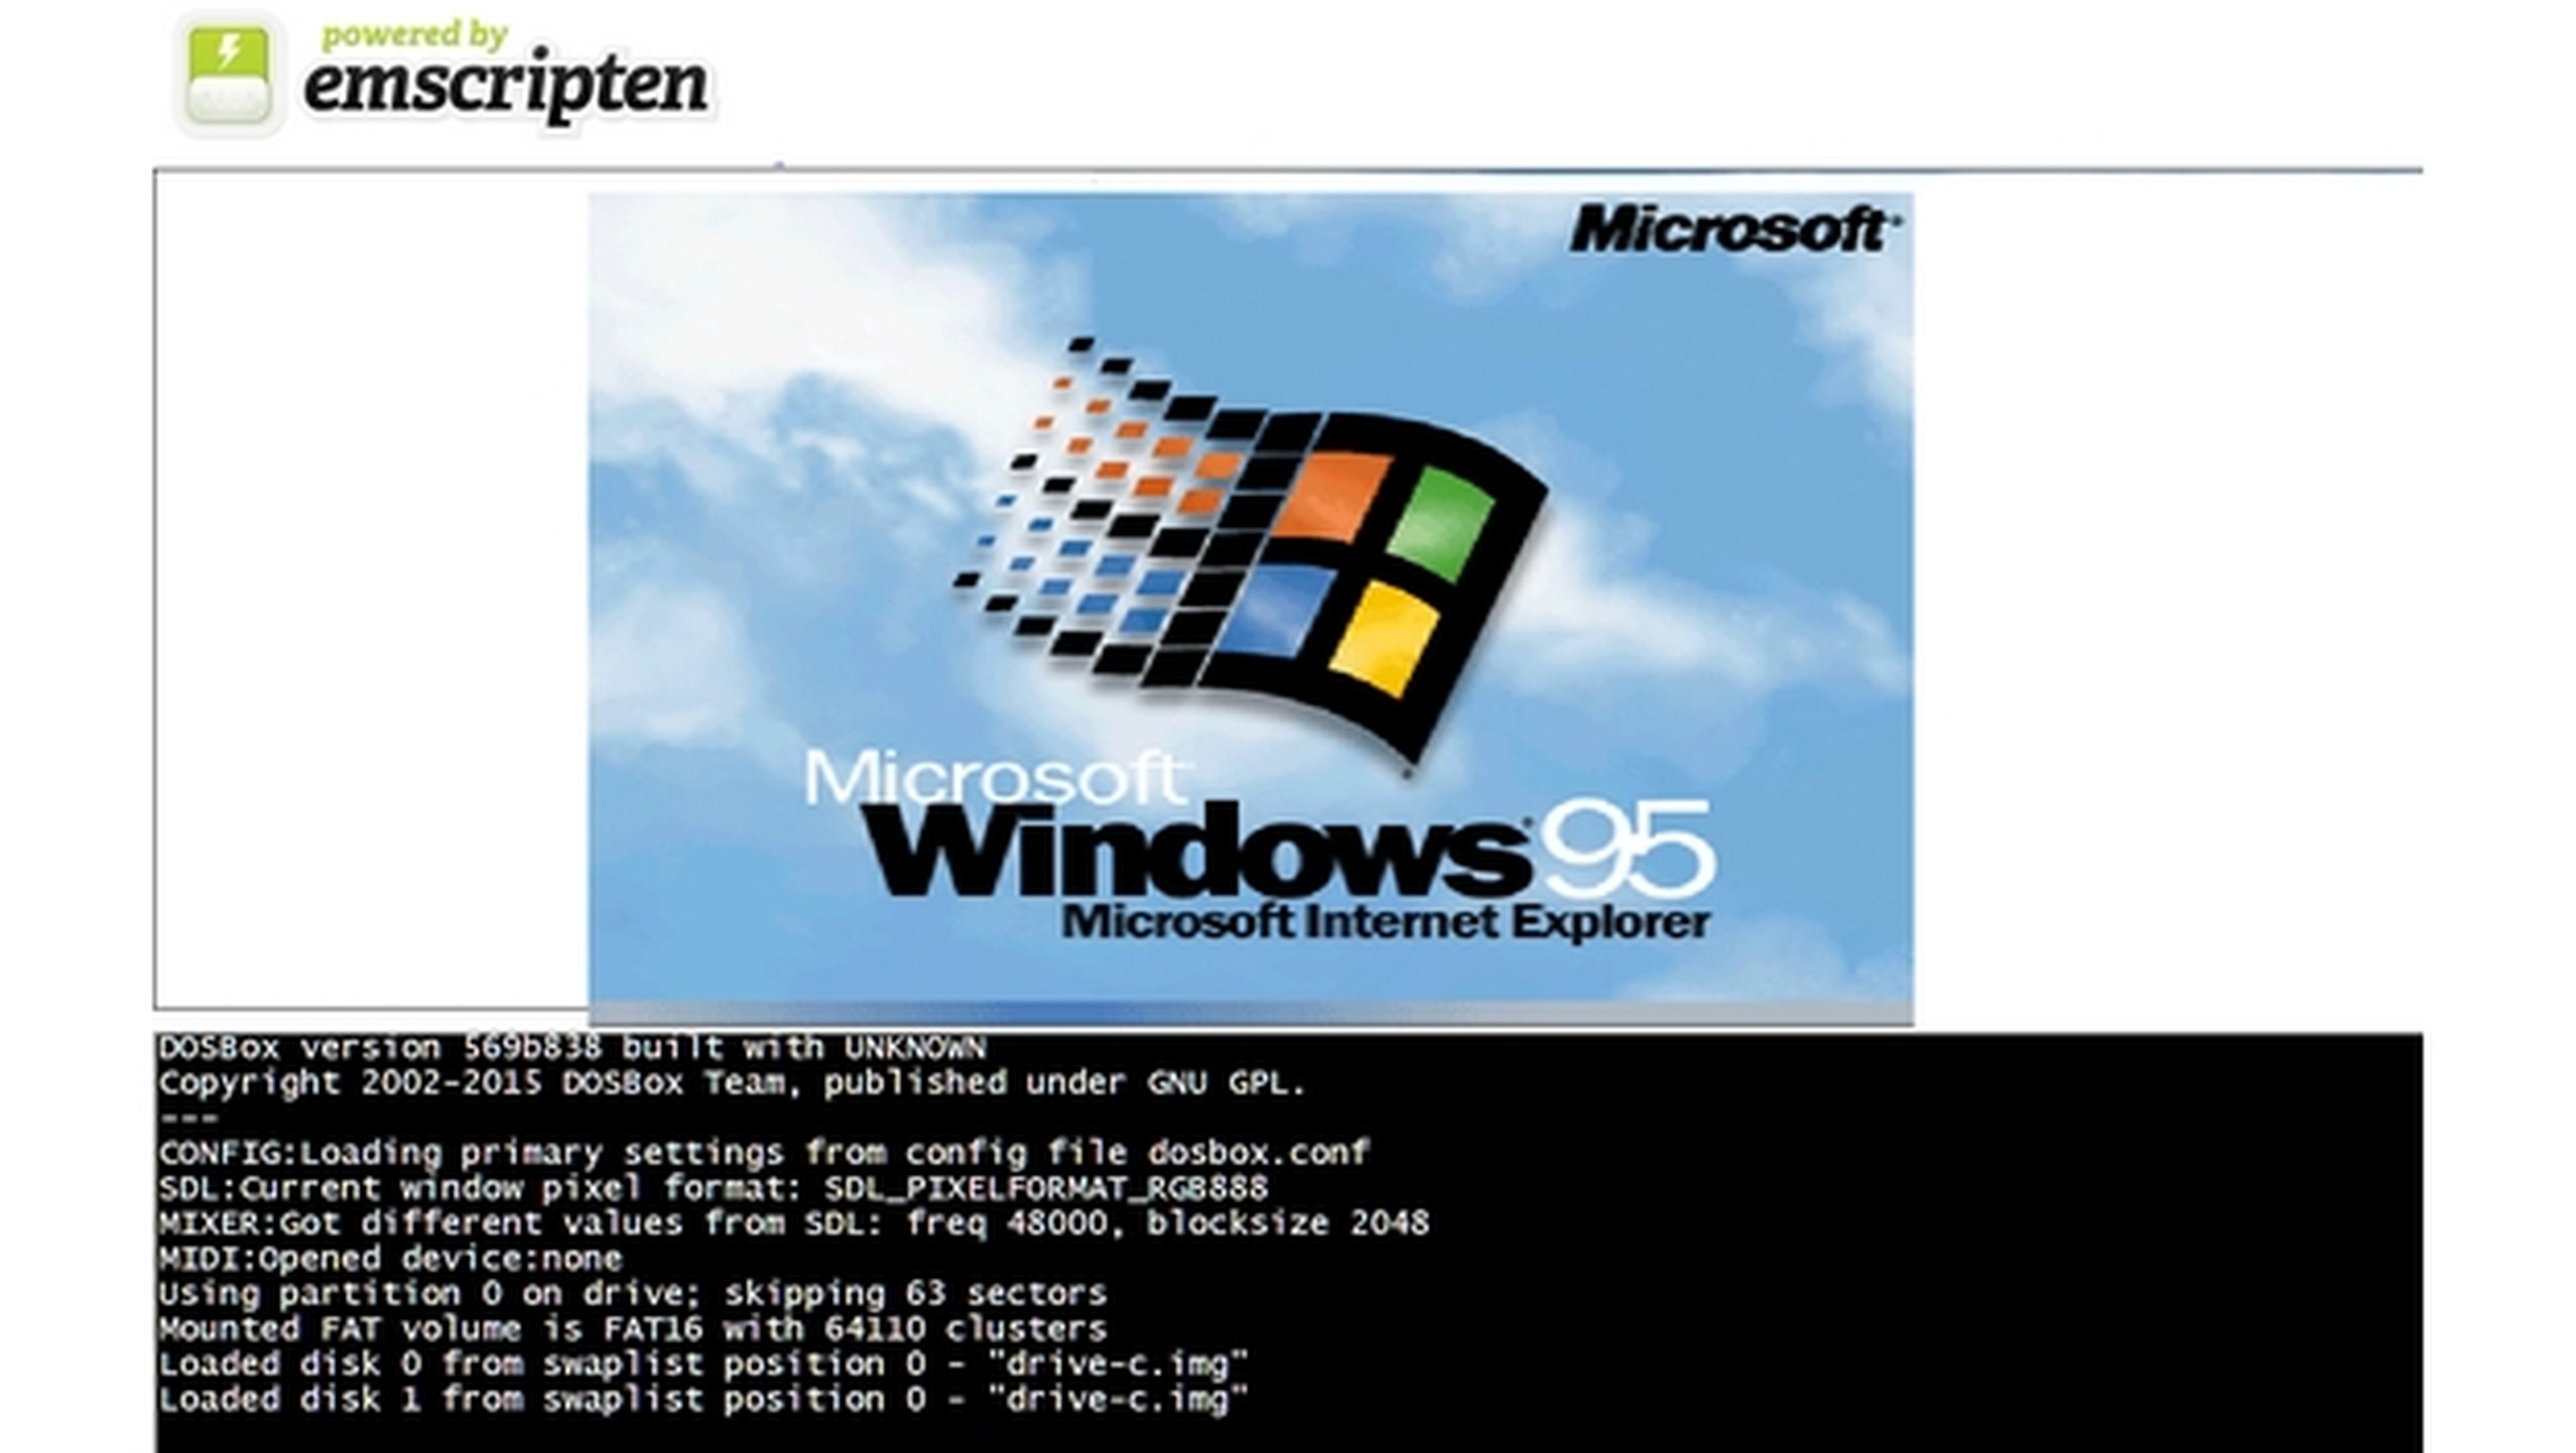 Descubre cómo ejecutar Windows 95 en el navegador sin instalación, por medio de un emulador